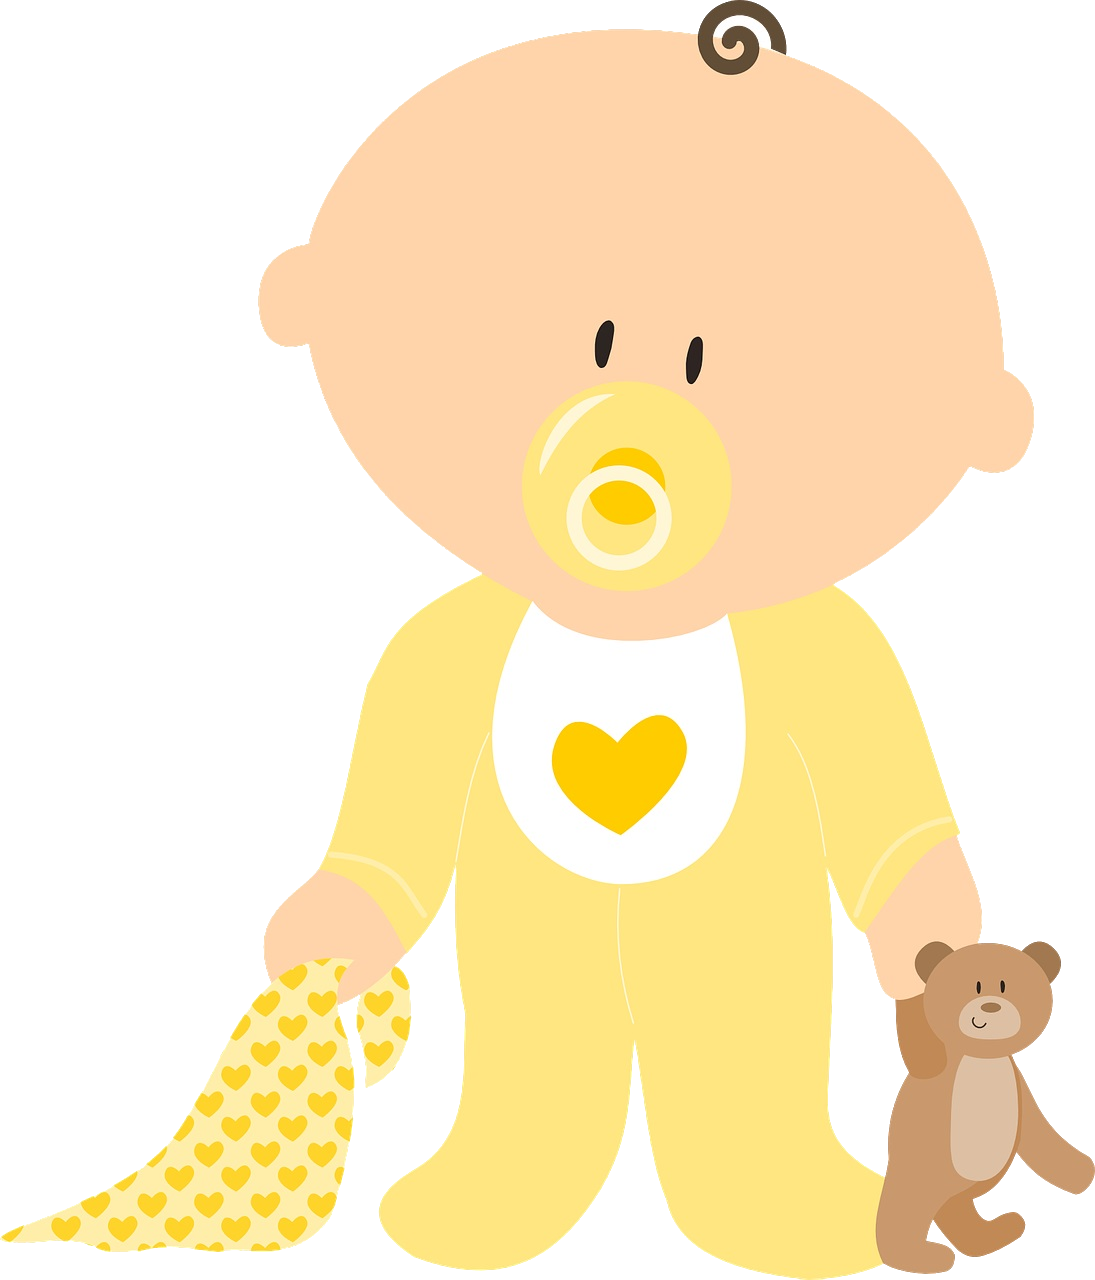 La imagen muestra un bebé de pie, con un pijama amarillo. Lleva puesto un chupete. En la mano derecha lleva un osito de peluche y en la izquierda una manta de bebé